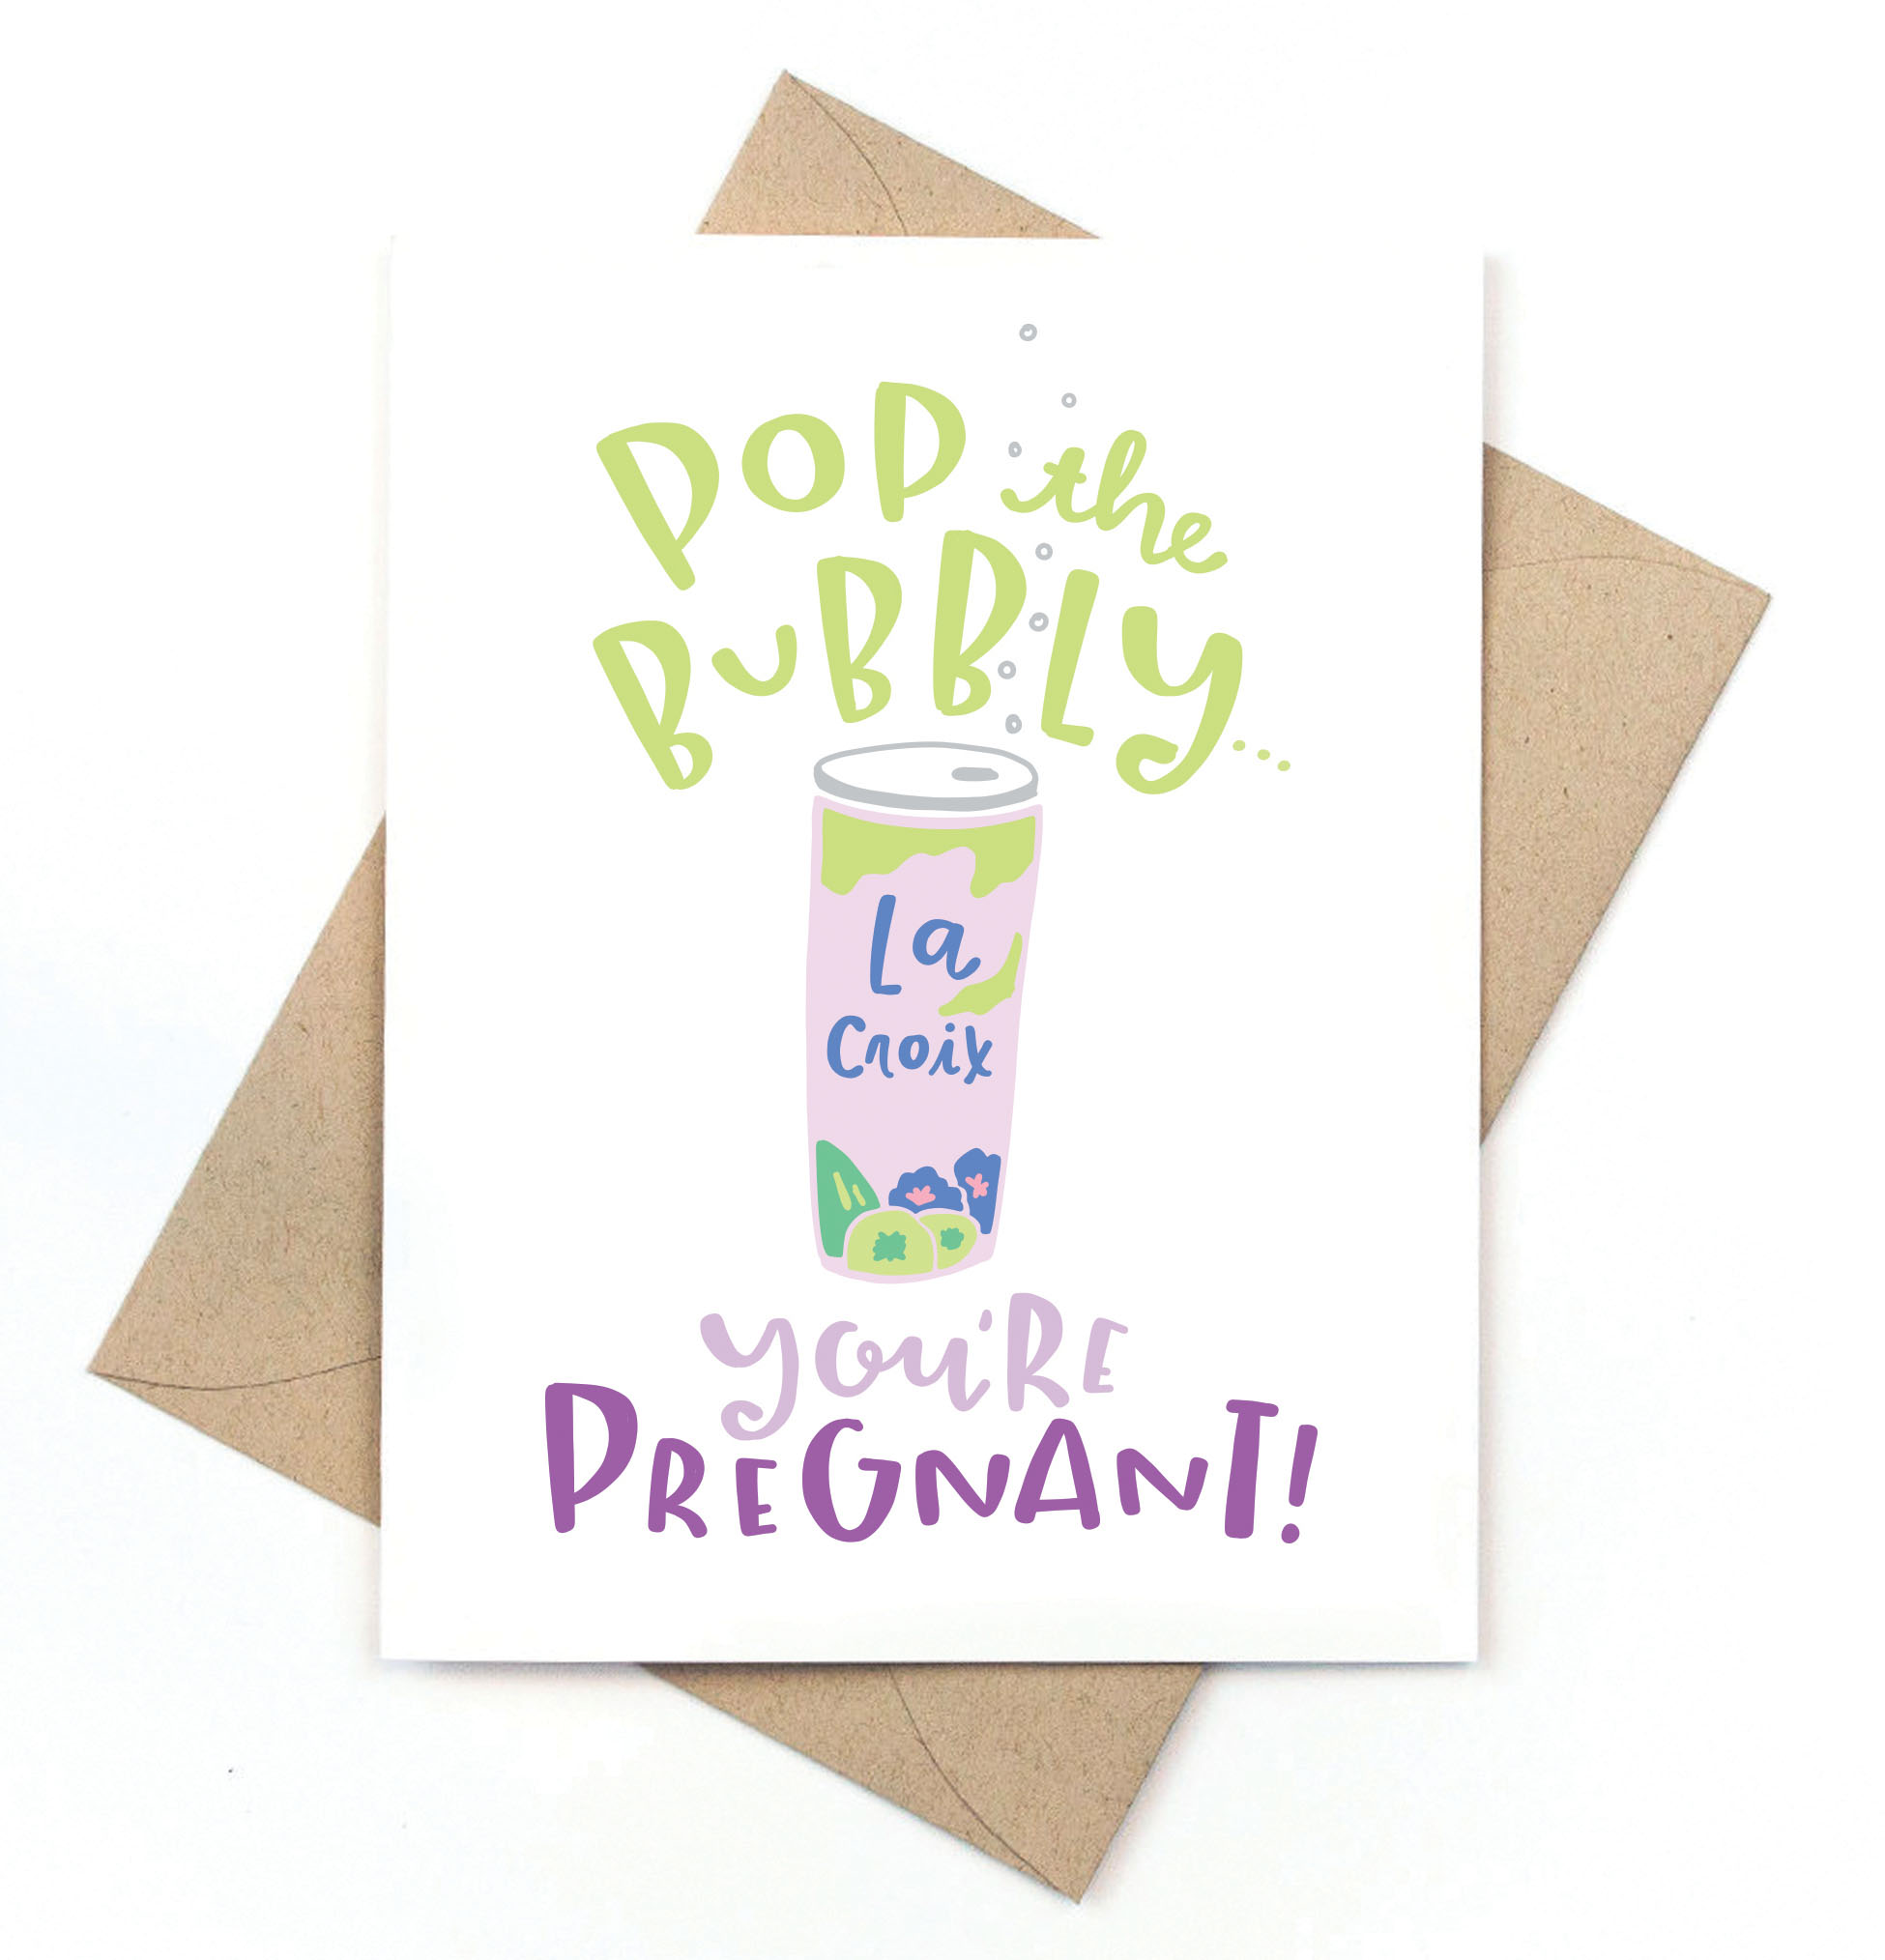 La Croix Pregnancy Card 
															/ Pinwheel Print Shop							